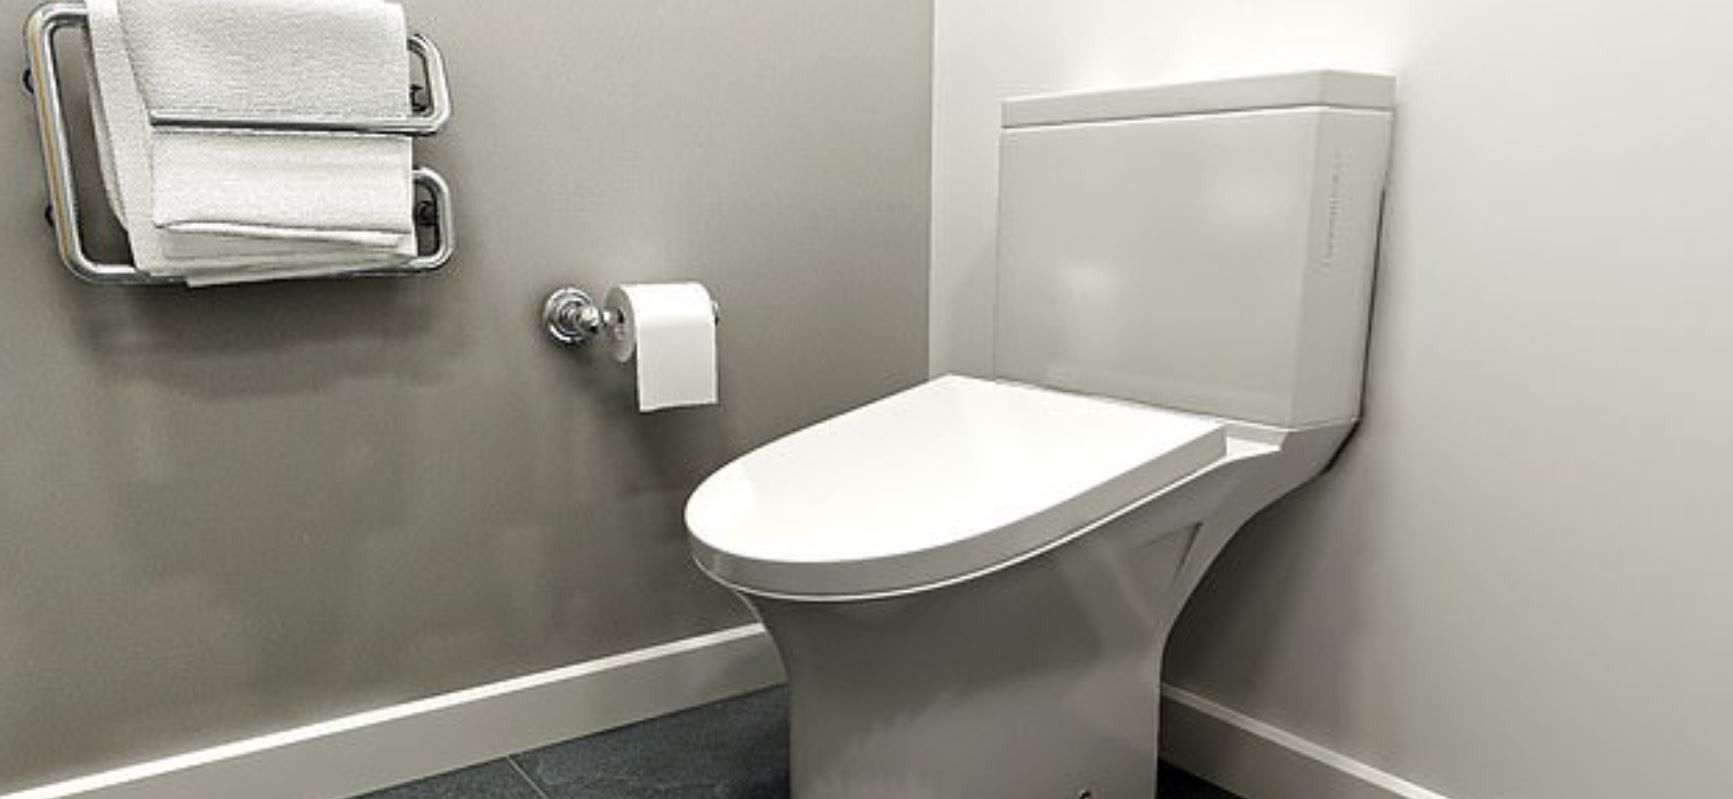 Англійці створили незручний "корисний унітаз". Така новинка завадить офісним працівникам проводити в туалеті надто багато часу на шкоду роботі.